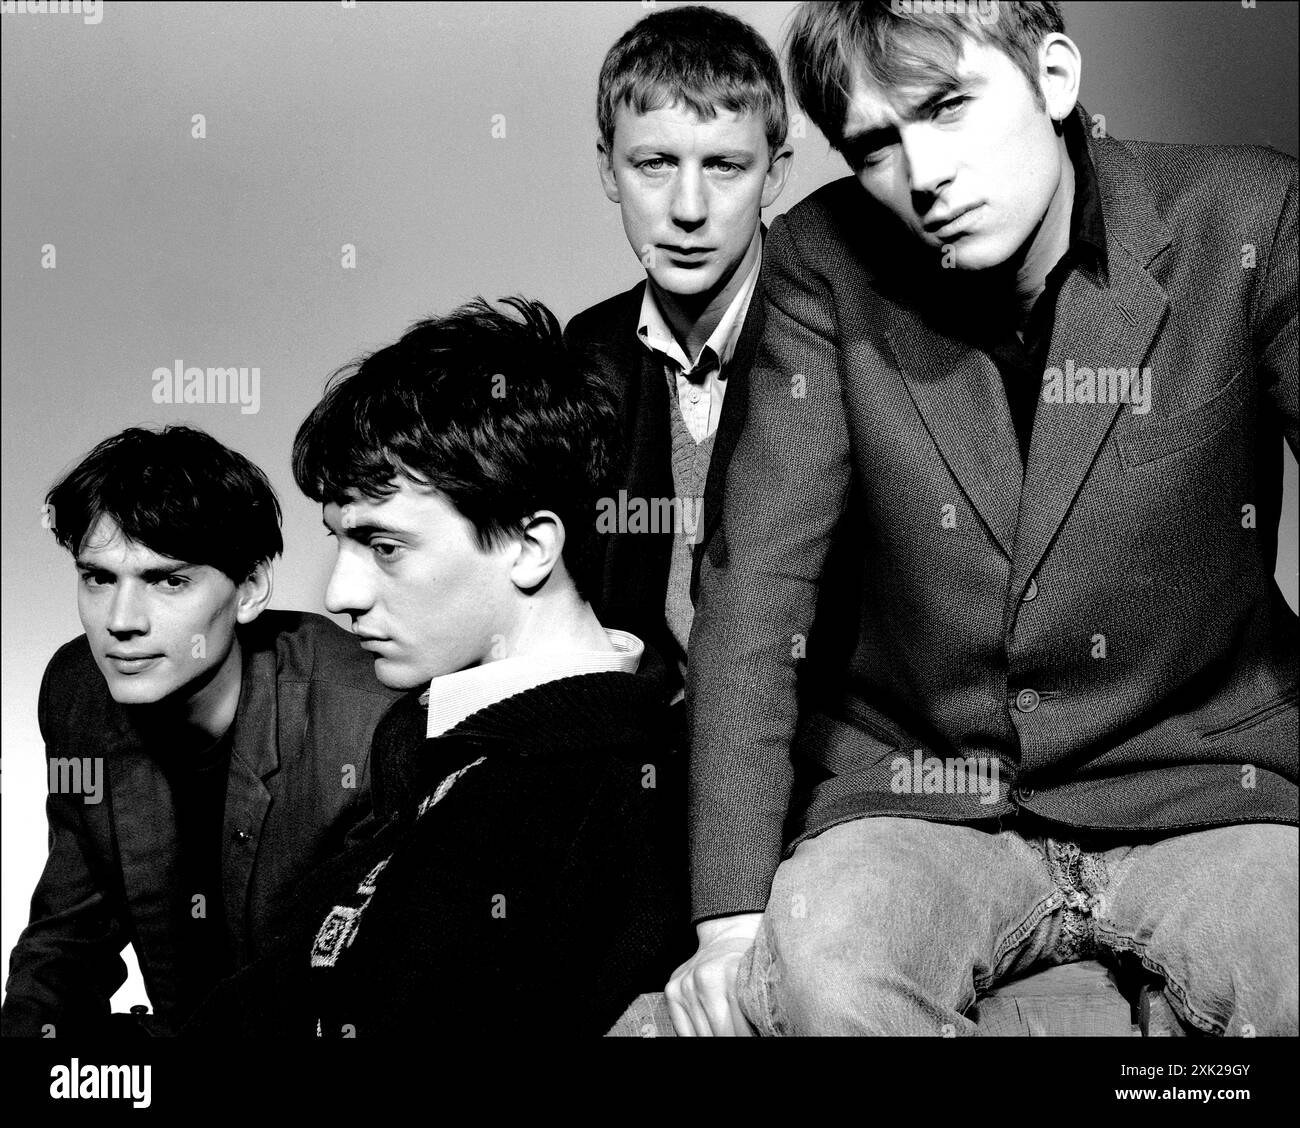 Blur Britpop band con Damon Albarn, Alex James, Dave Rowntree & Graham Coxon e un grande cane danese. Immagini di stampa e marketing, tra cui British Image No.1 e No.2. 1993 Foto Stock